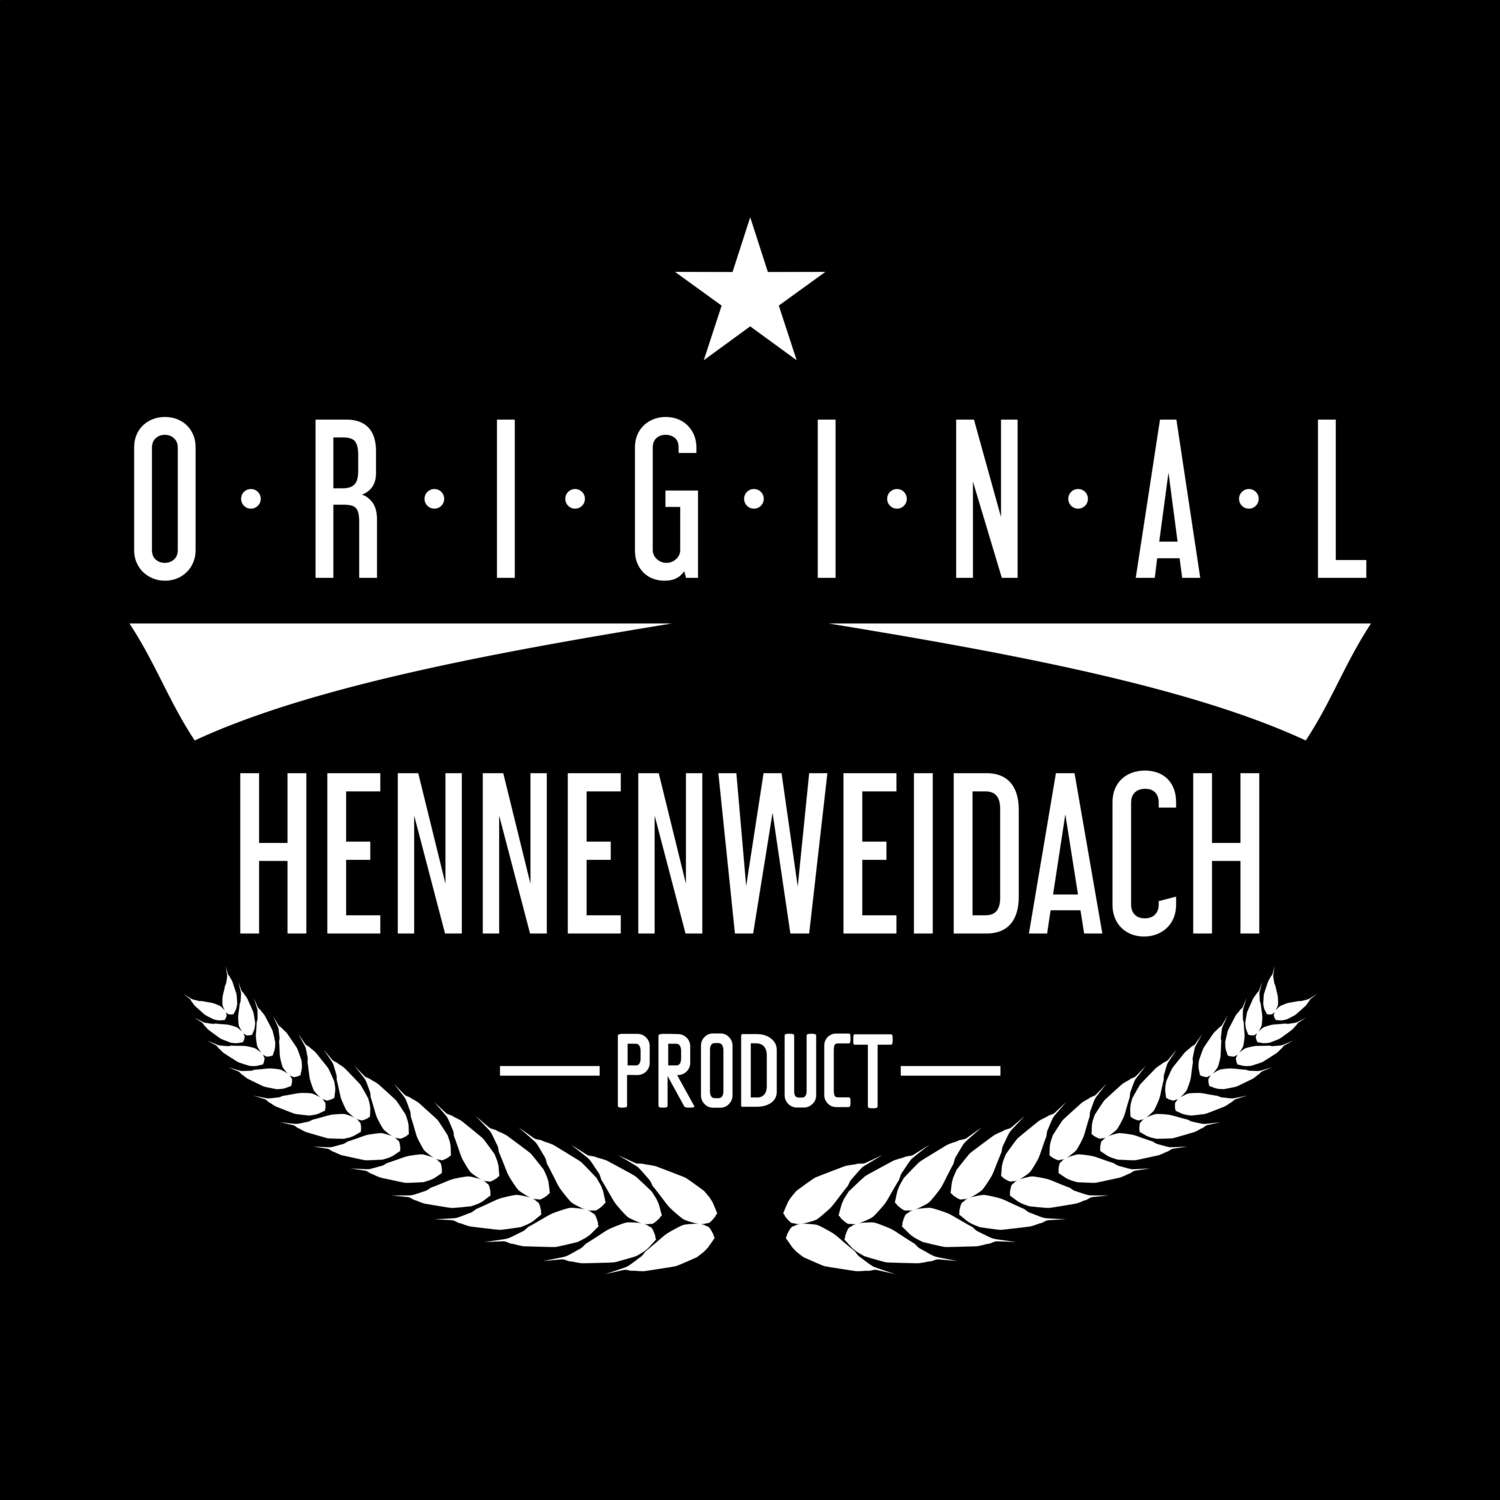 Hennenweidach T-Shirt »Original Product«